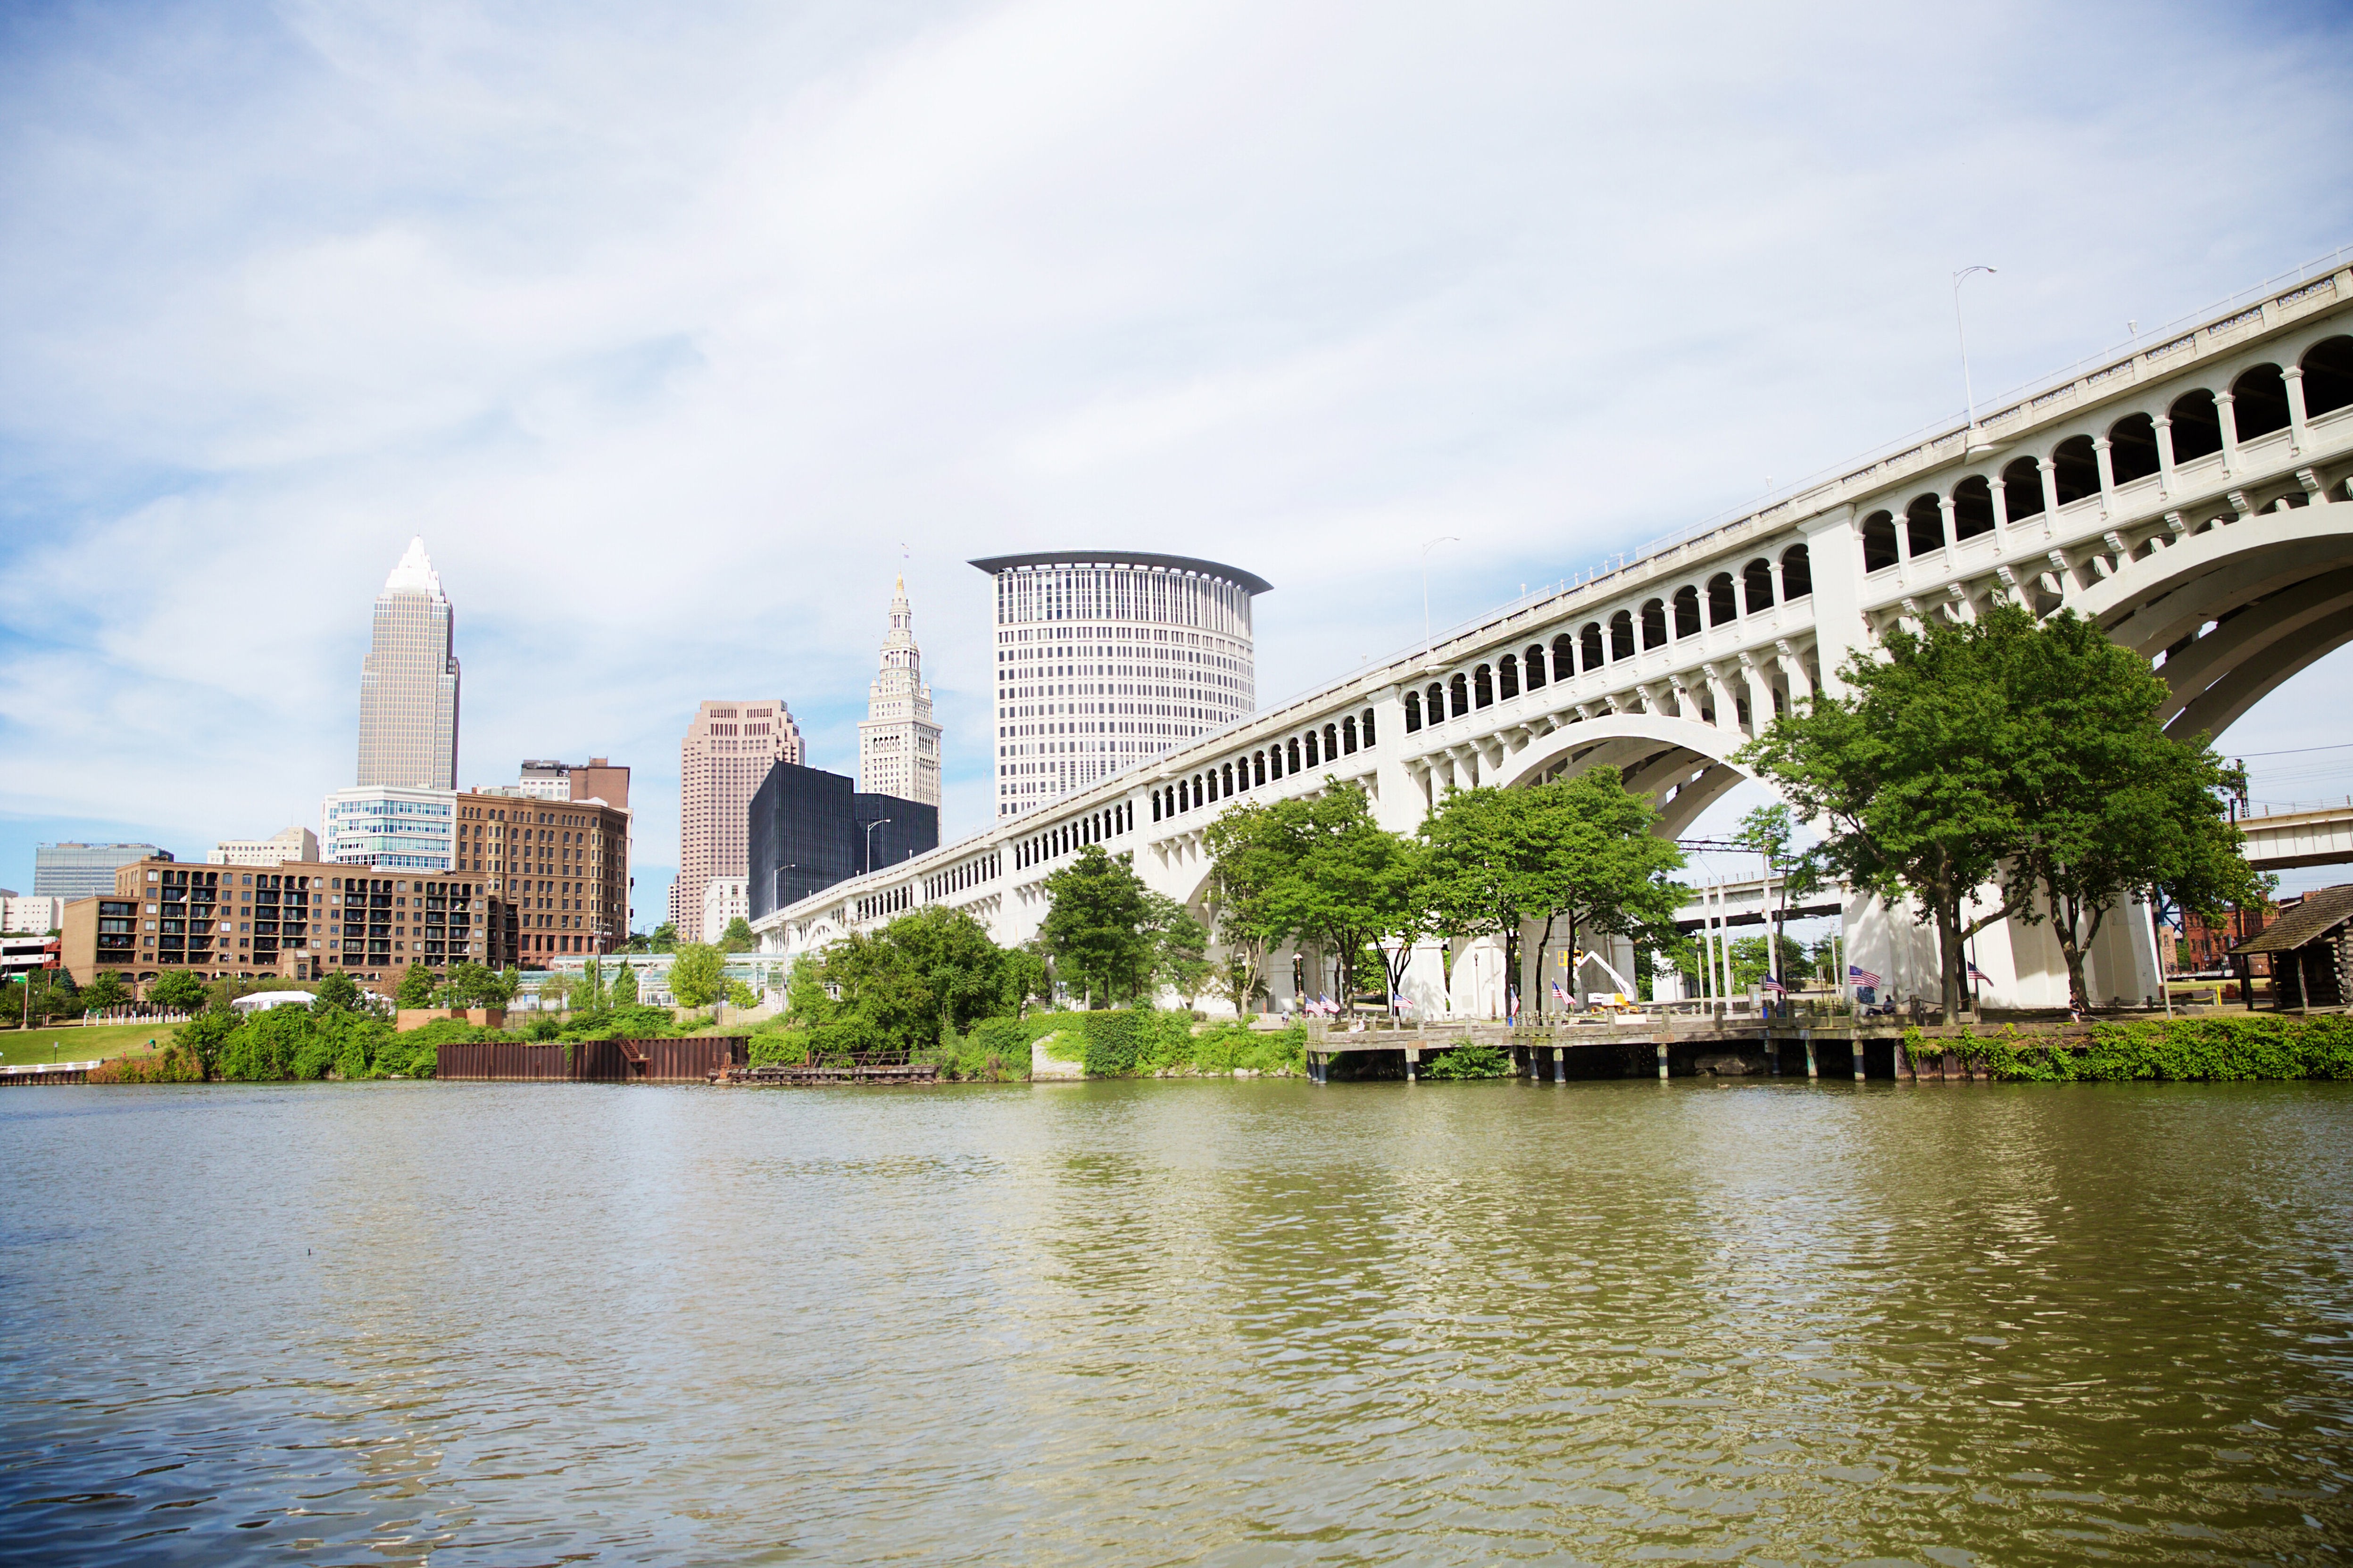 Aufforstung in Cleveland: Unsere Stadt soll kühler werden